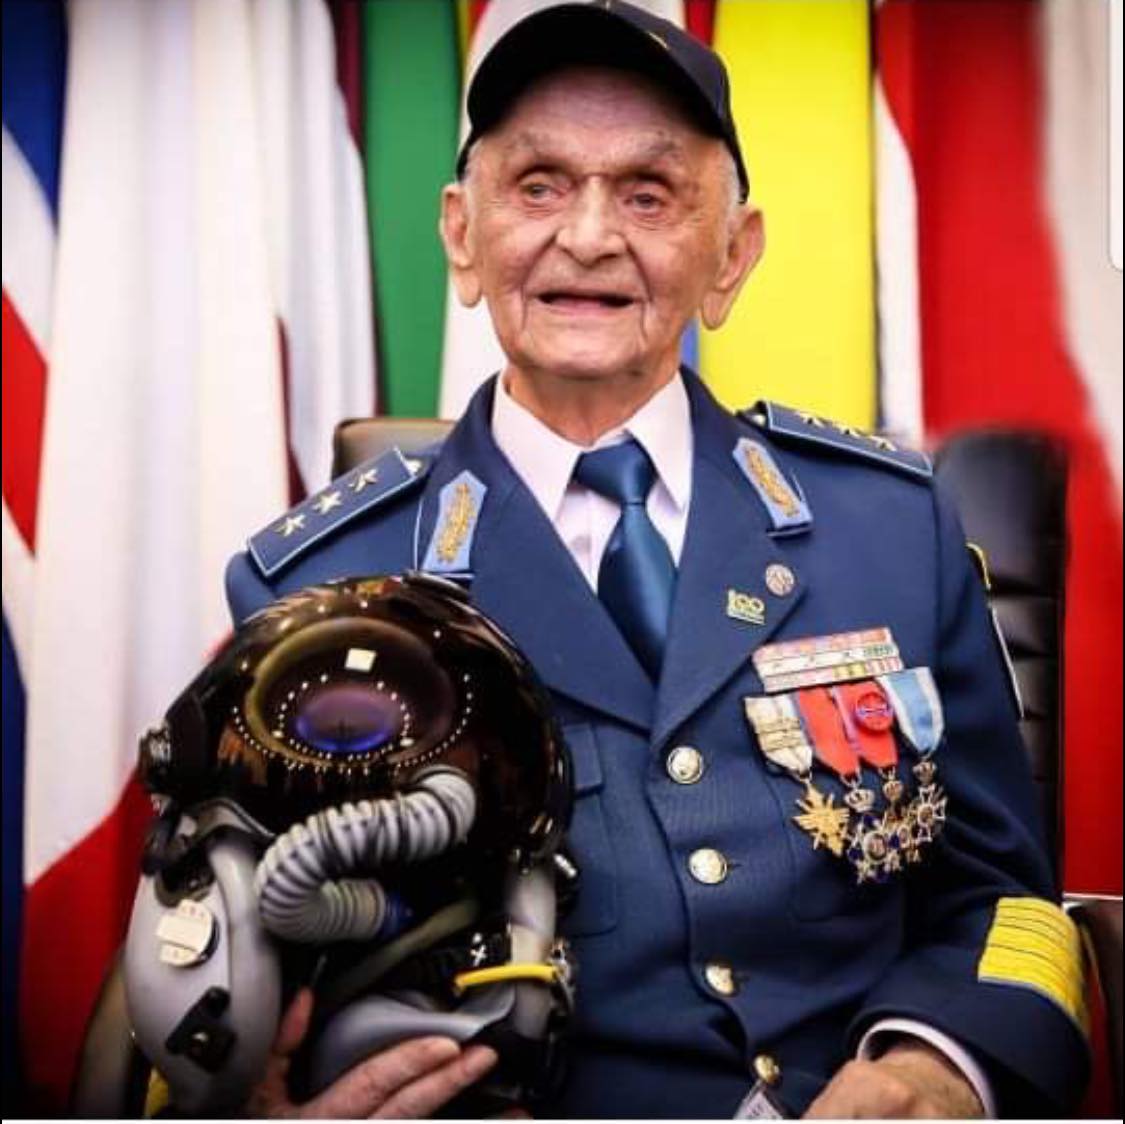 A murit ultimul pilot de vânătoare din lume din timpul ultimului război mondial. Era român, generalul Ion Dobran